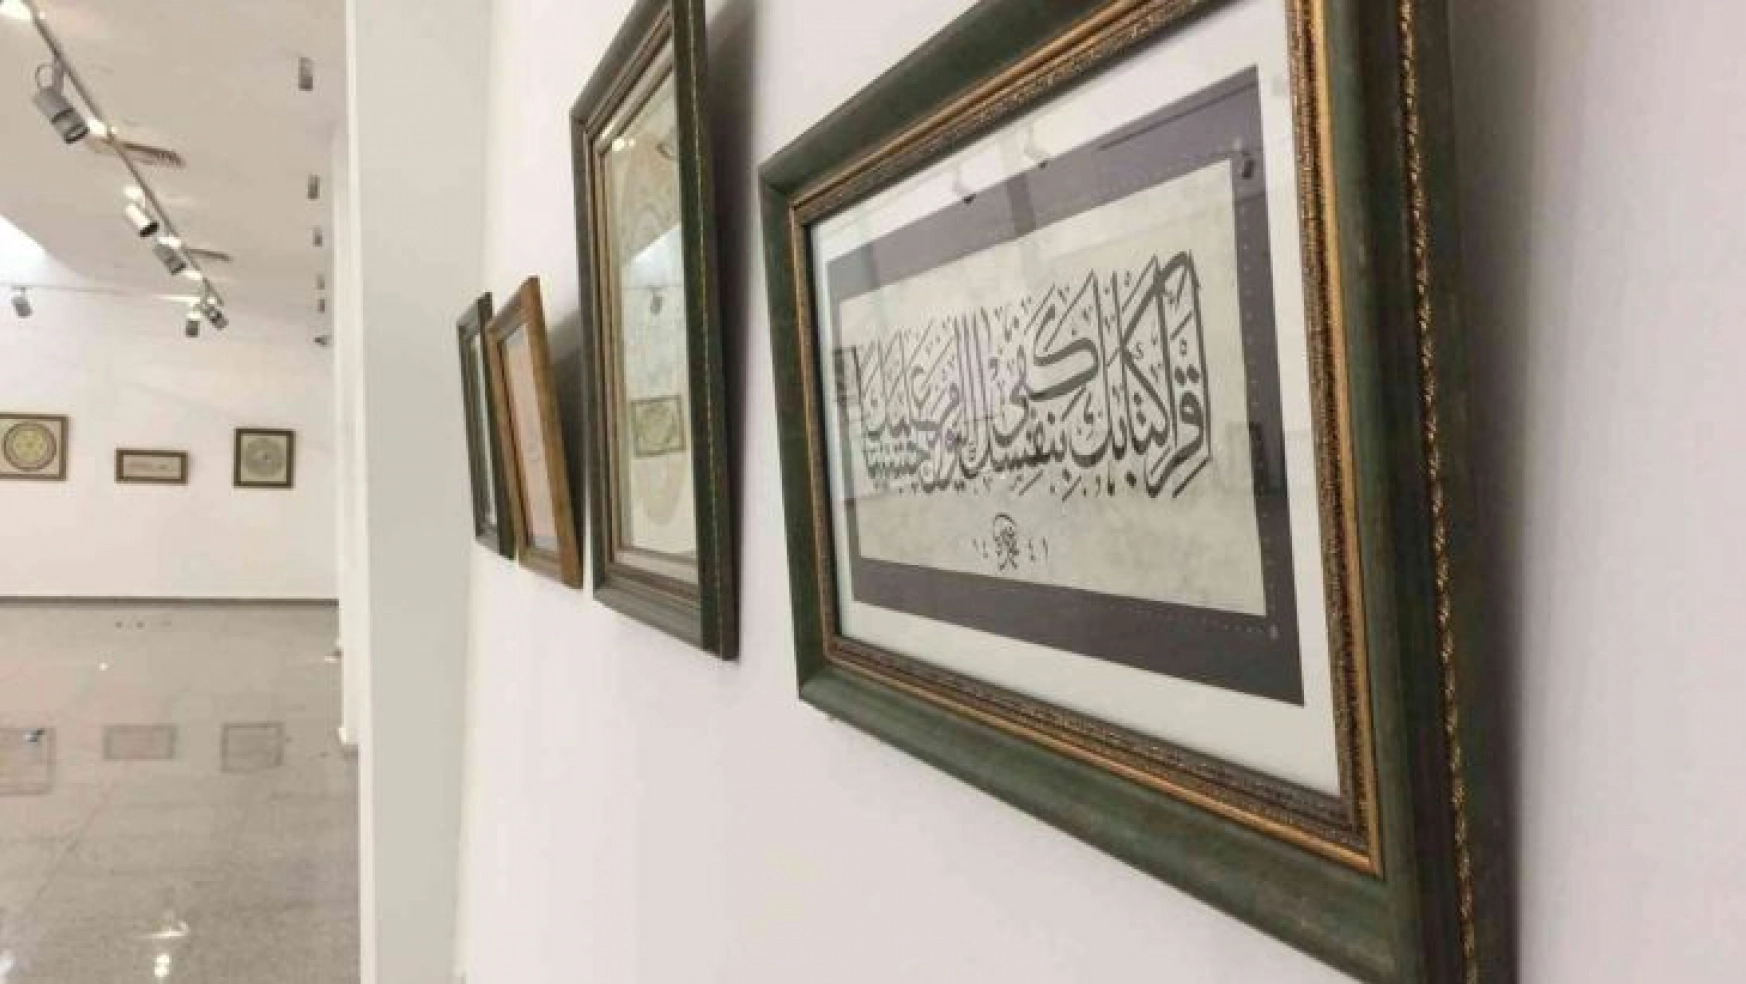 30 yıldır hat sanatı ile uğraşan hattat 'Hat Allah'ın kelamını yazmaktır'